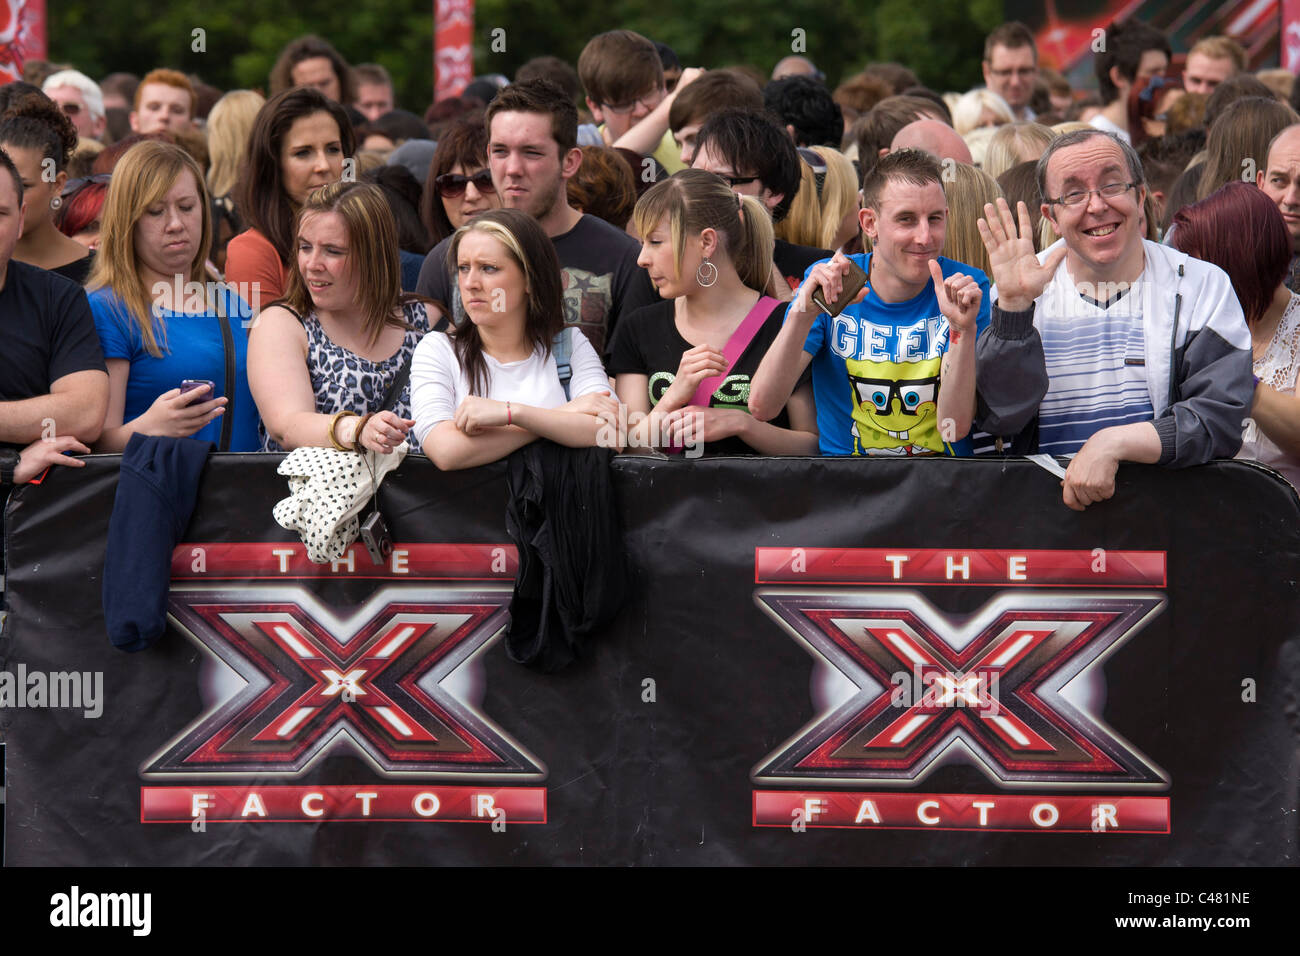 Les personnes en attente d'audition pour l'émission de télévision X Factor au LG Arena, NEC, Birmingham Juin 2011 Banque D'Images